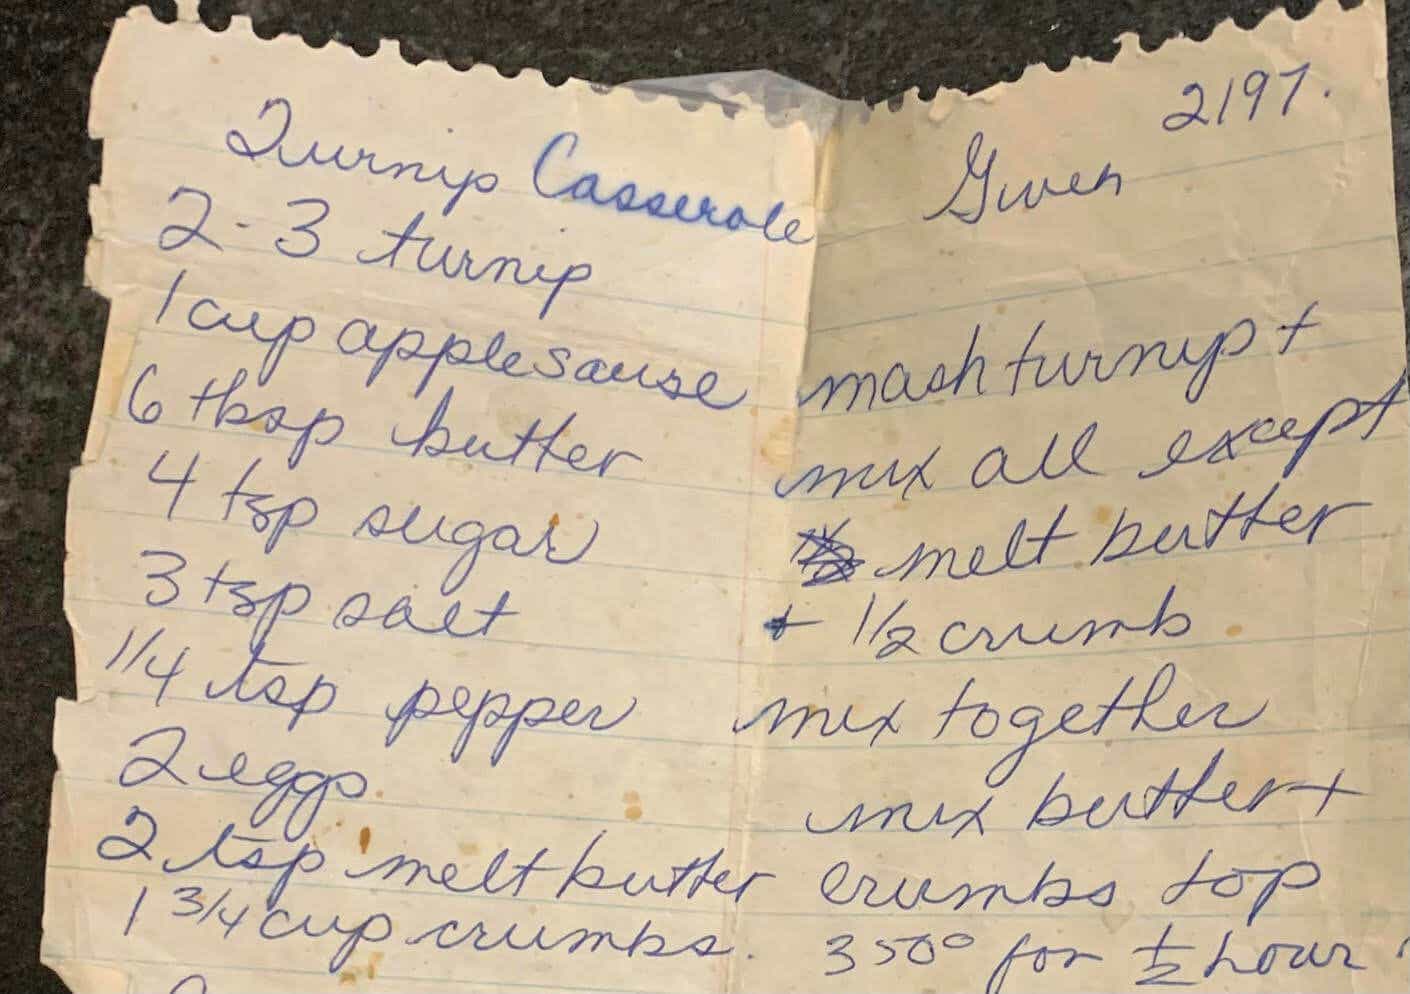 An image of a handwritten recipe.